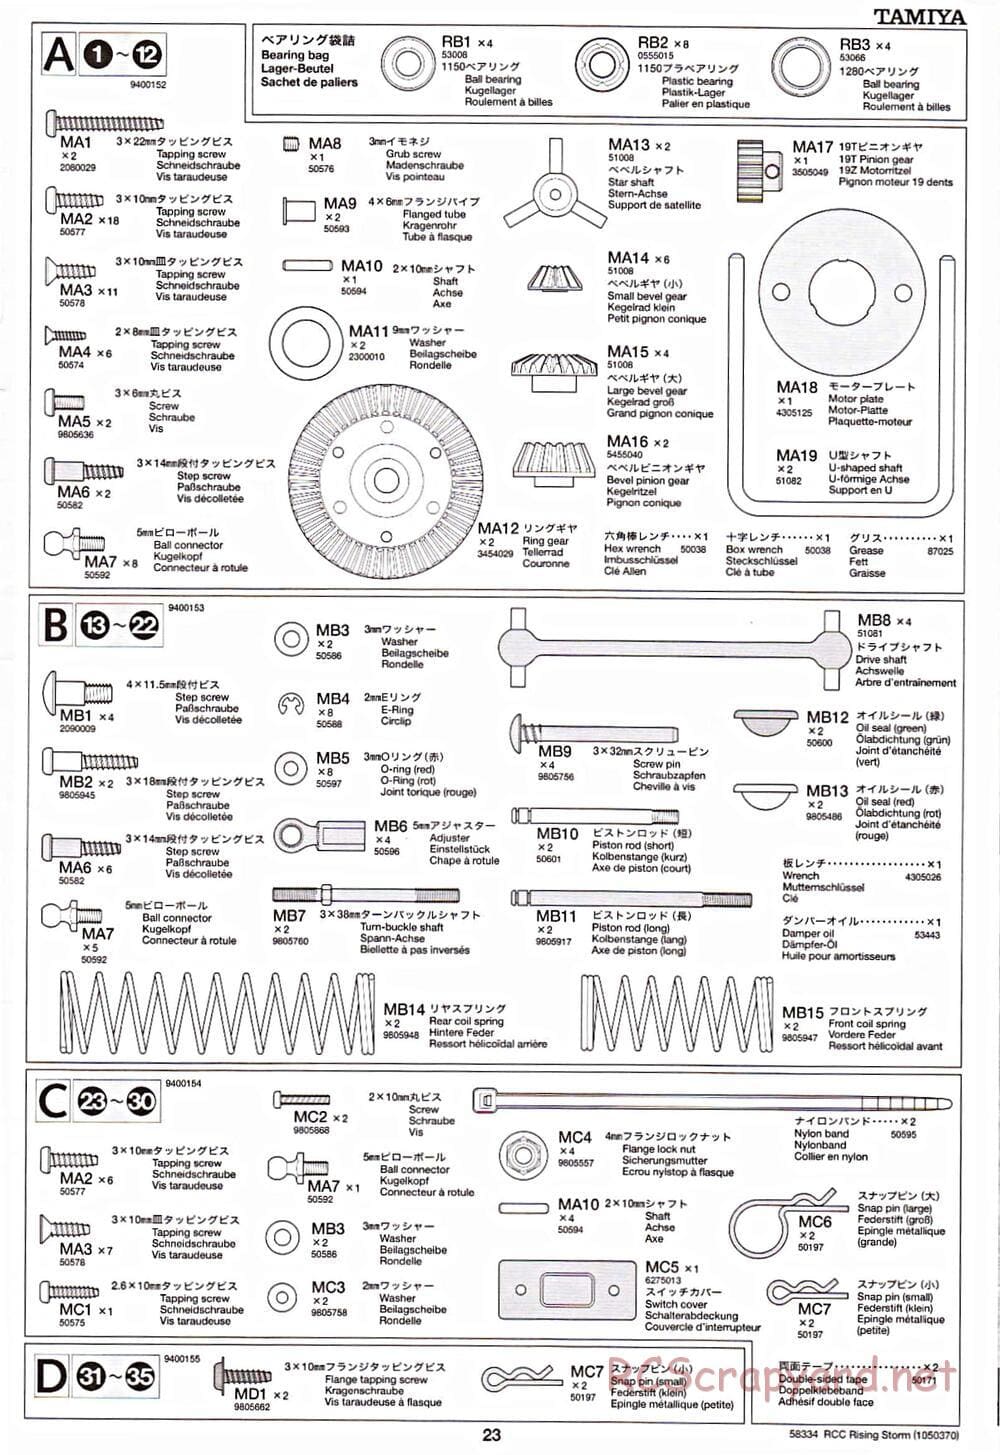 Tamiya - Rising Storm Chassis - Manual - Page 23